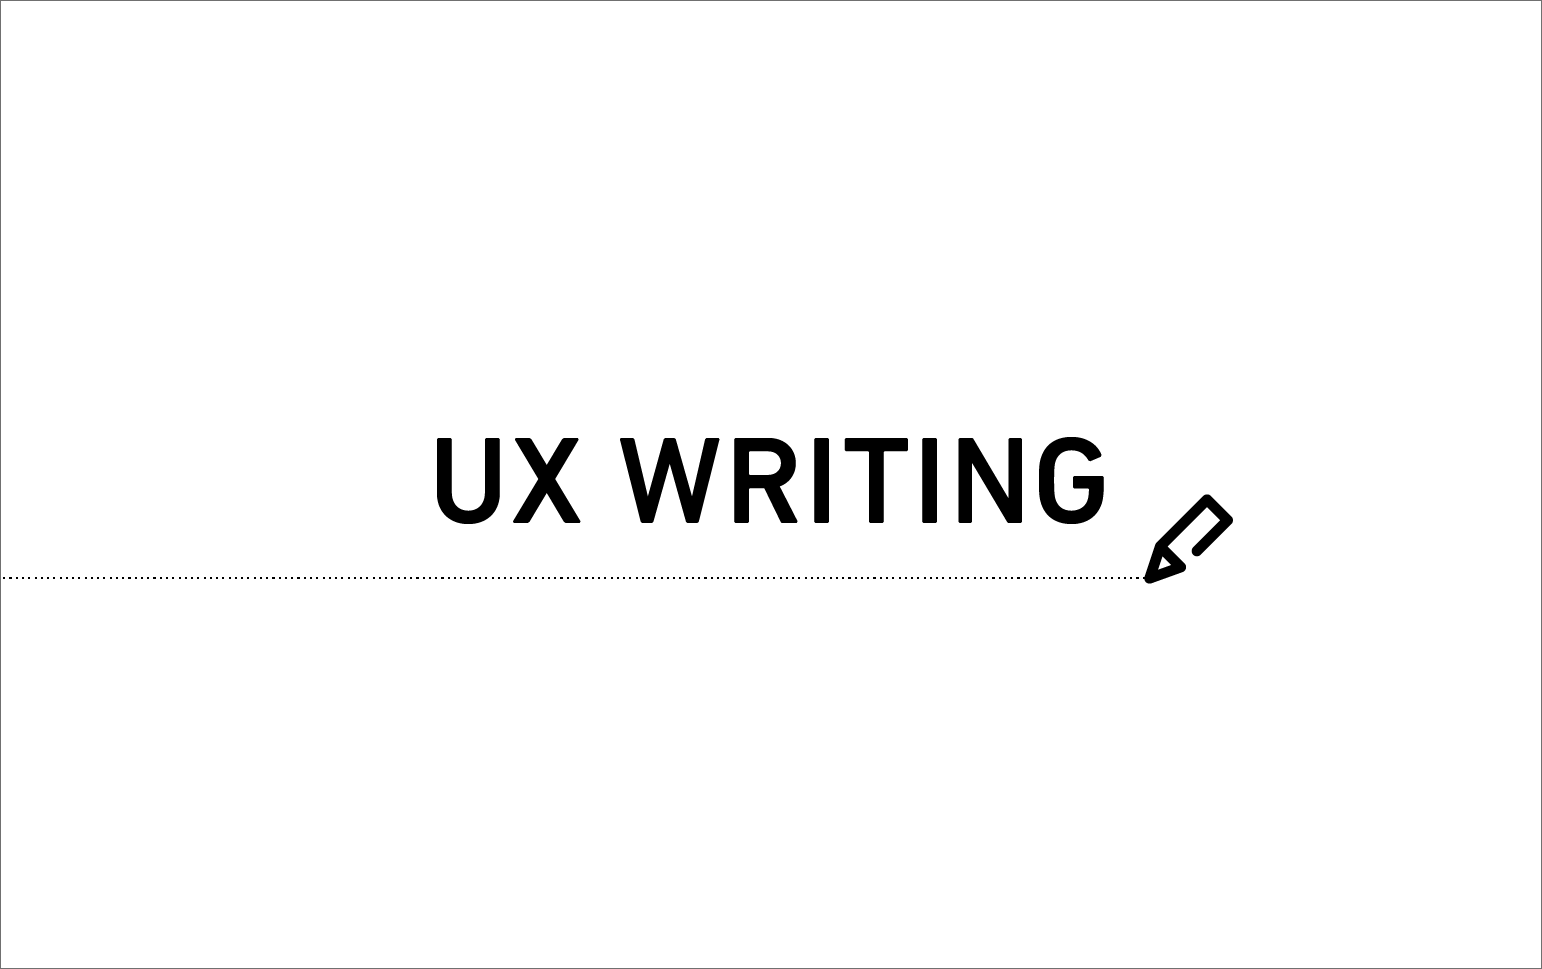 「UX WRITING」の文字を中心にして、ペンのアイコンが添えられている。